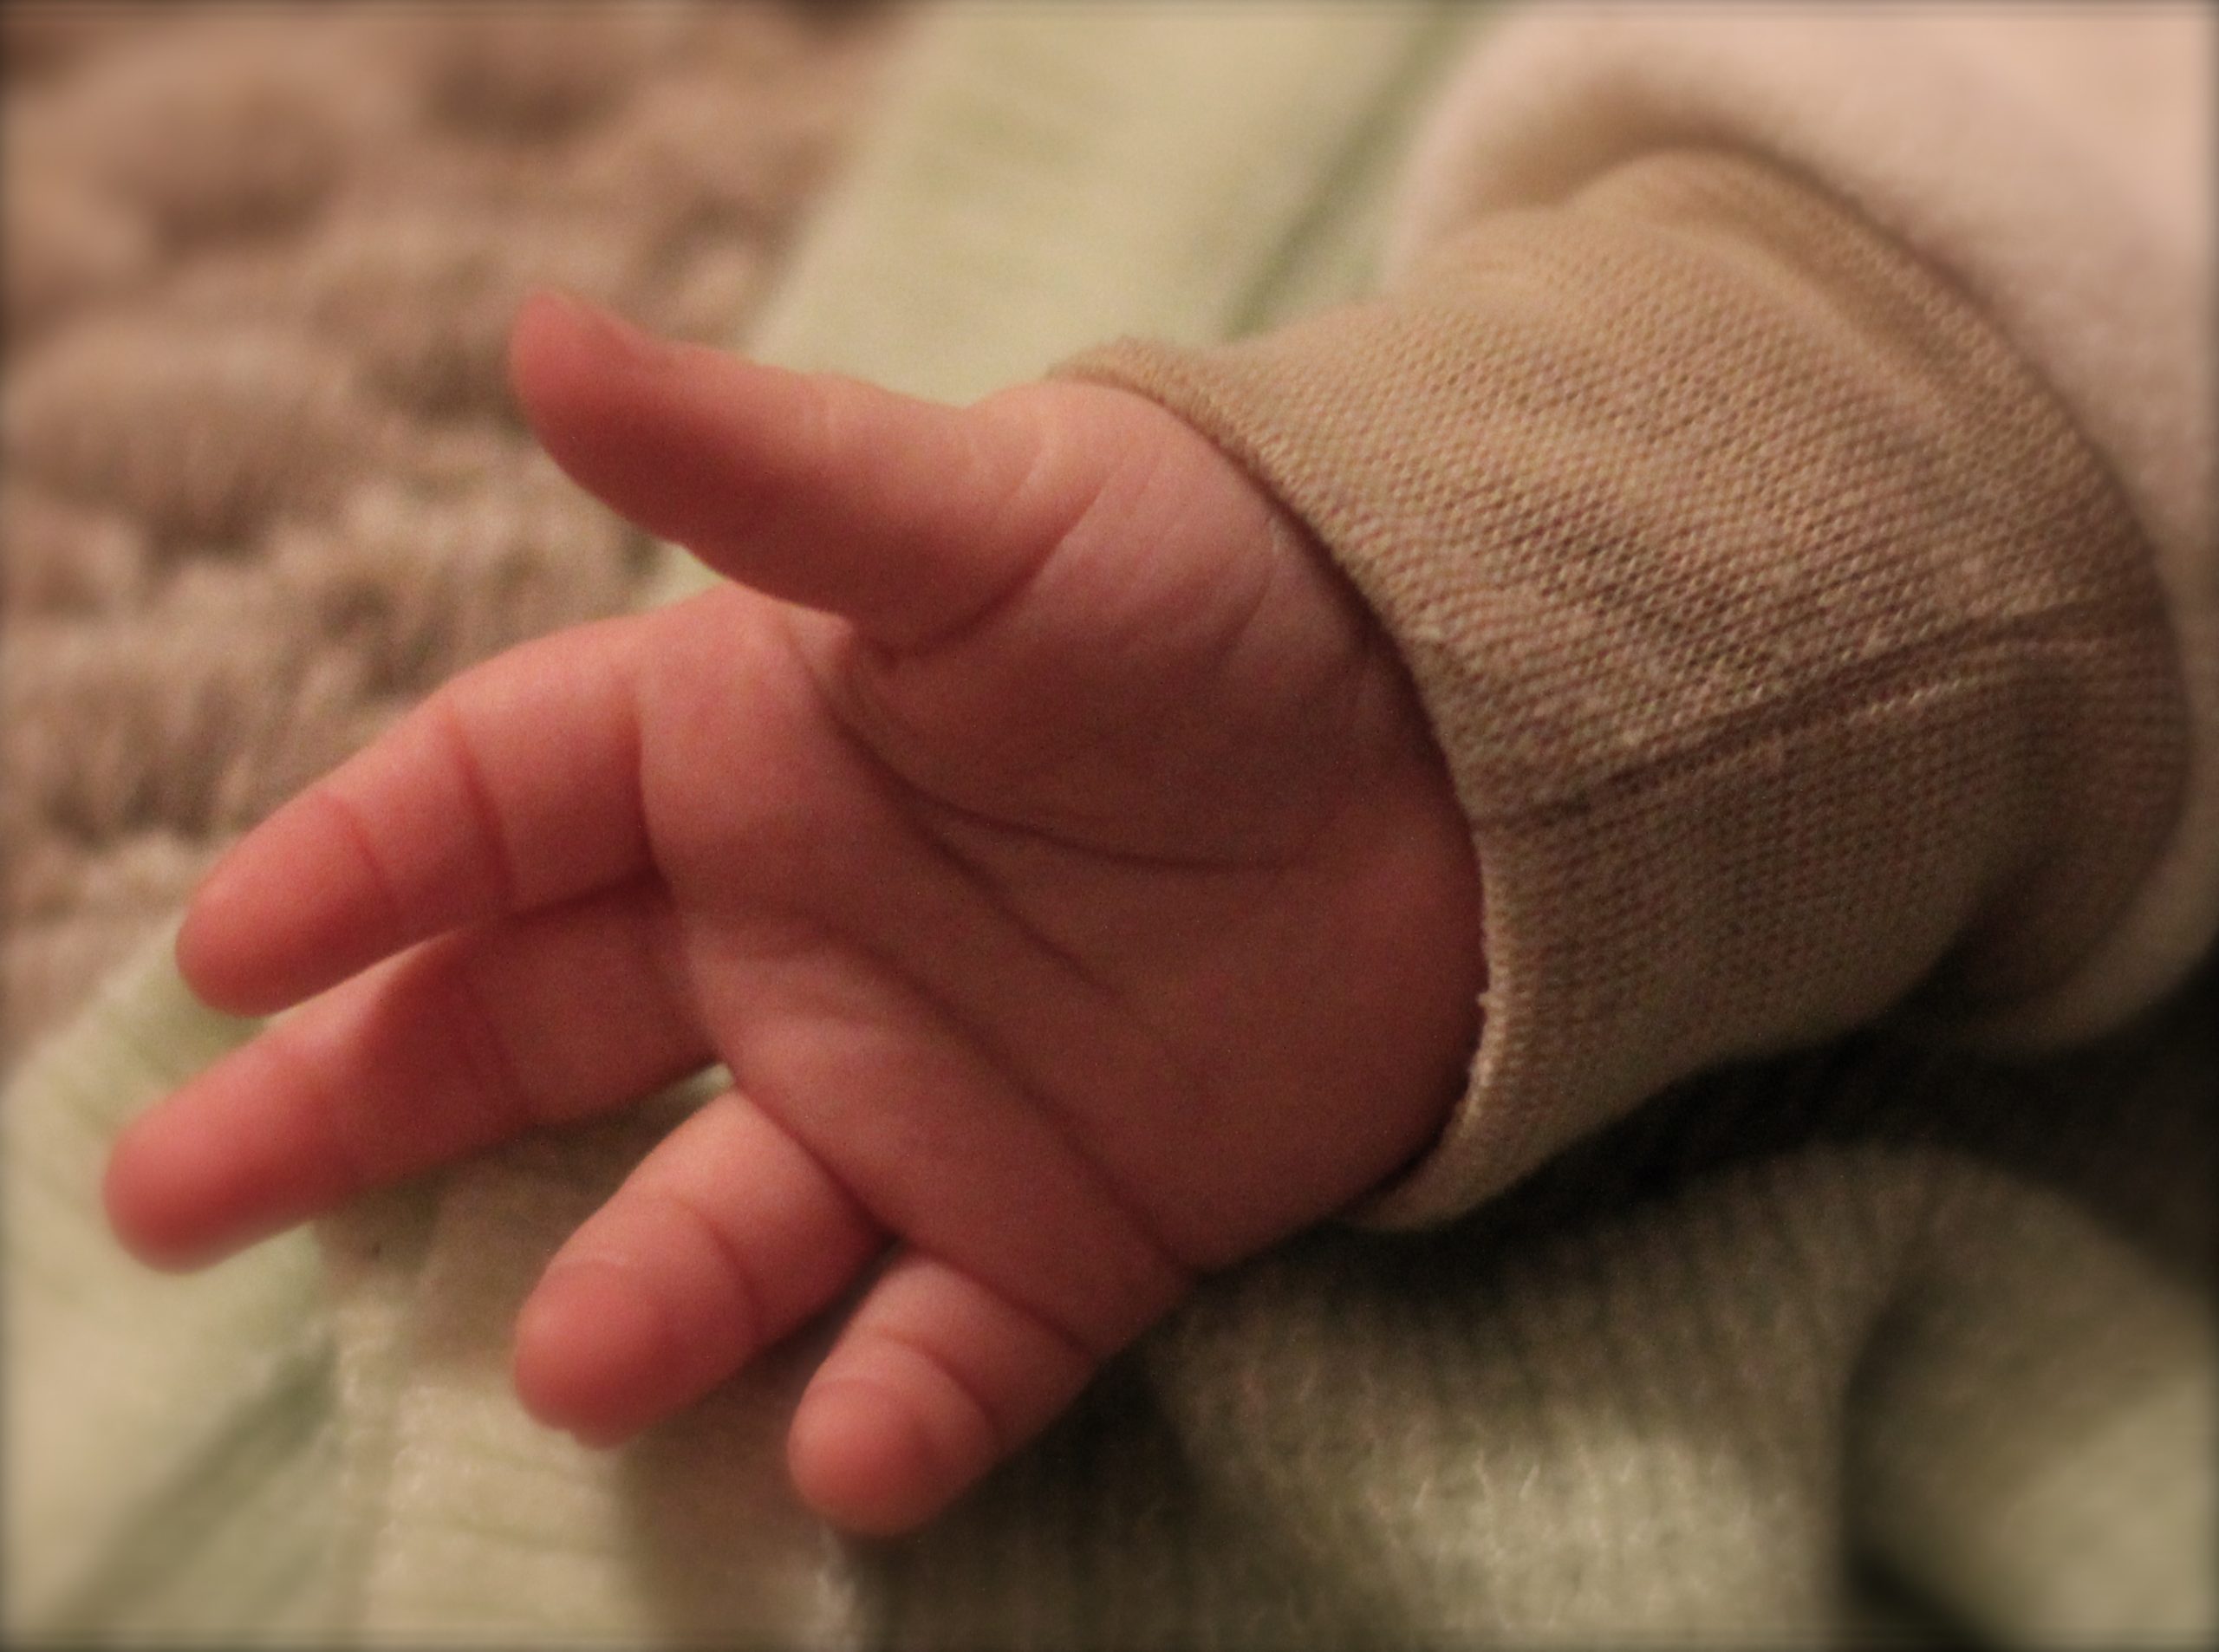 Μια 19χρονη είναι ο φονιάς του μωρού στην Πετρούπολη – Το έπνιξε αφού το γέννησε- Σοκάρουν οι αποκαλύψεις